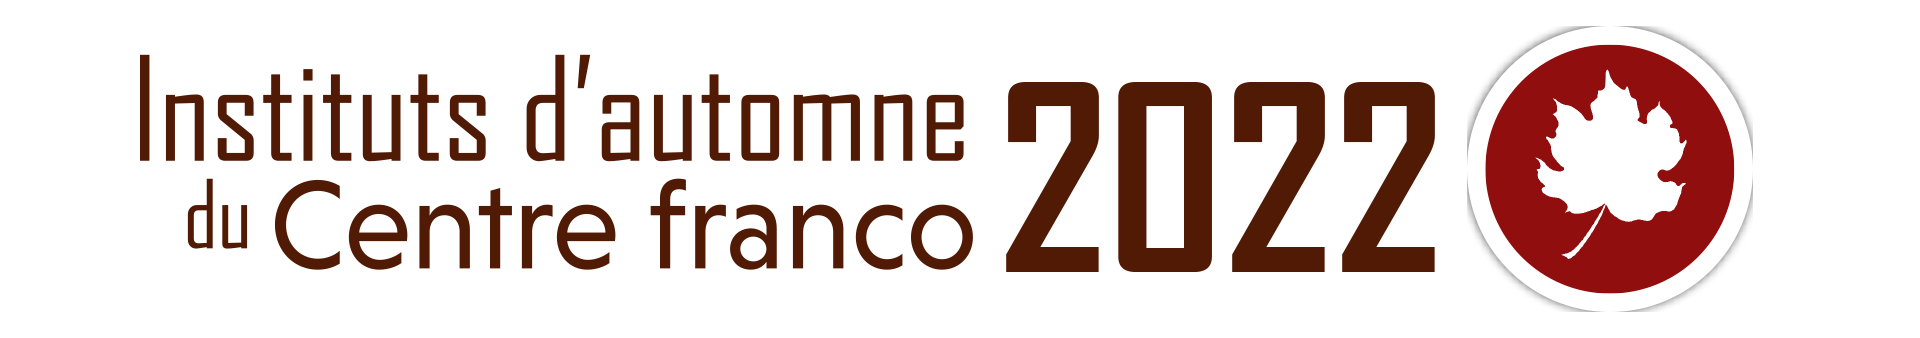 Les instituts d'automne du centre franco 2022